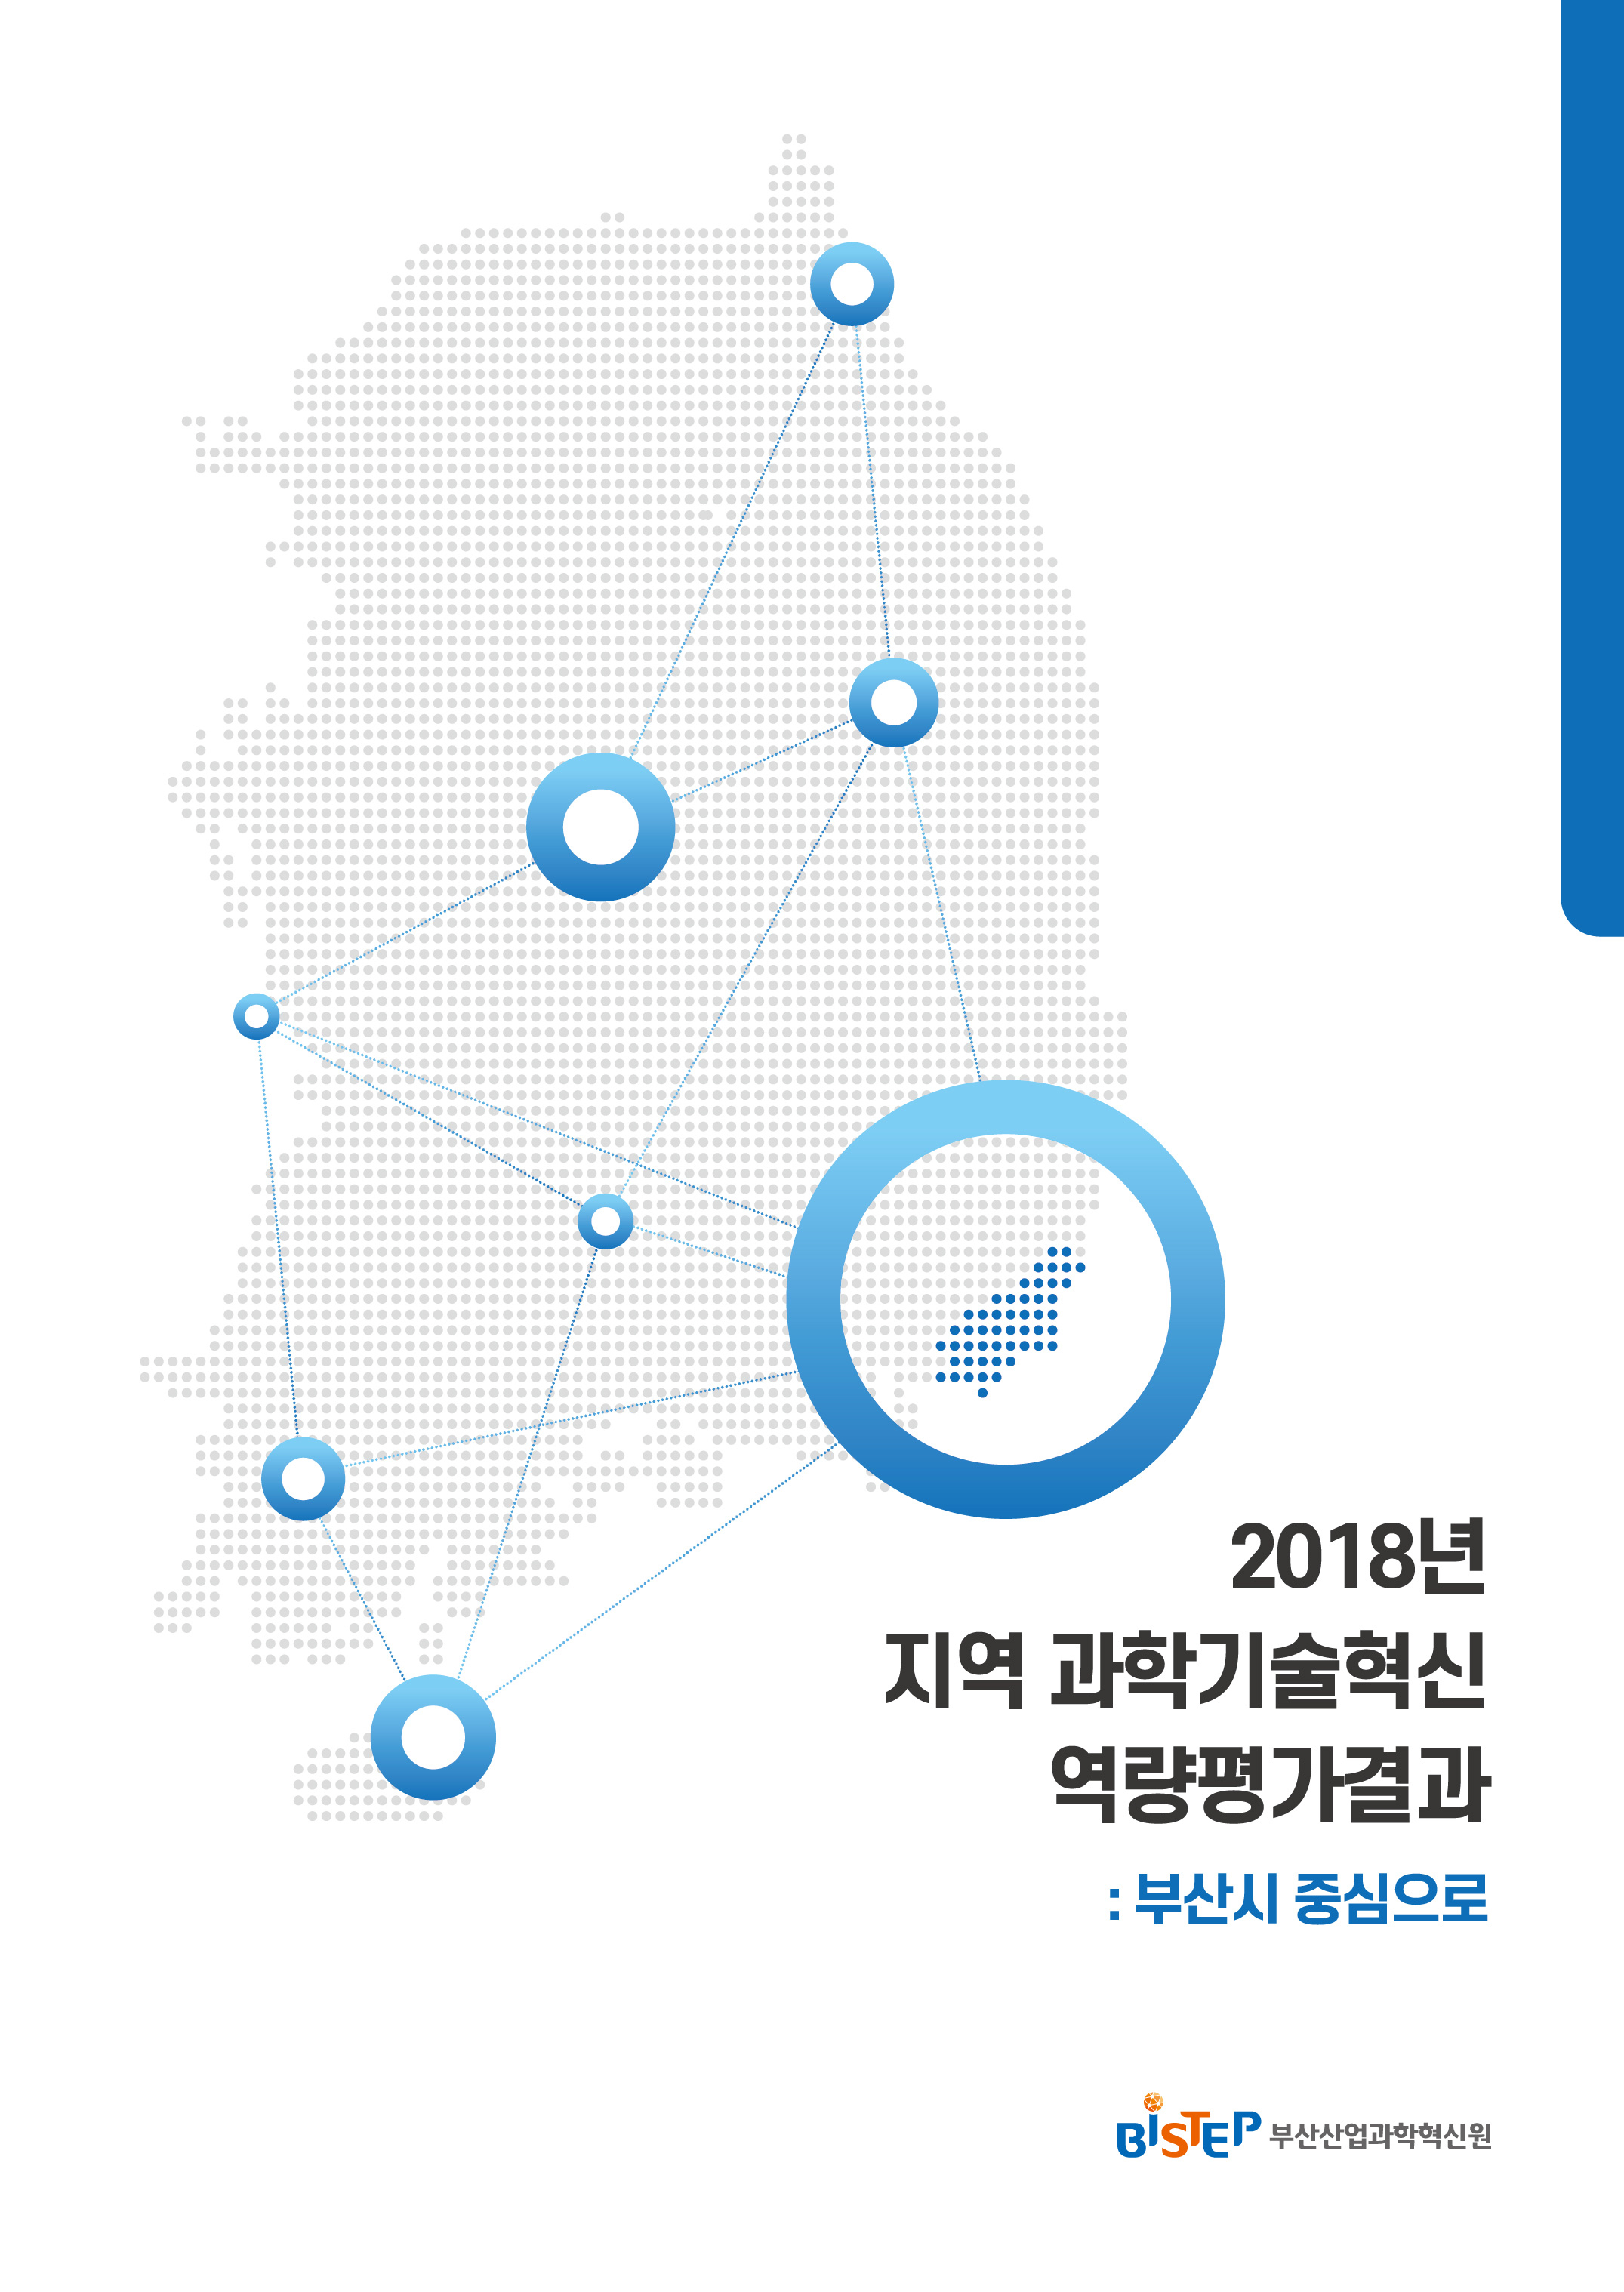 페이지 범위 2018년 지역과학기술혁신역량평가결과-부산시 중심으로.jpg